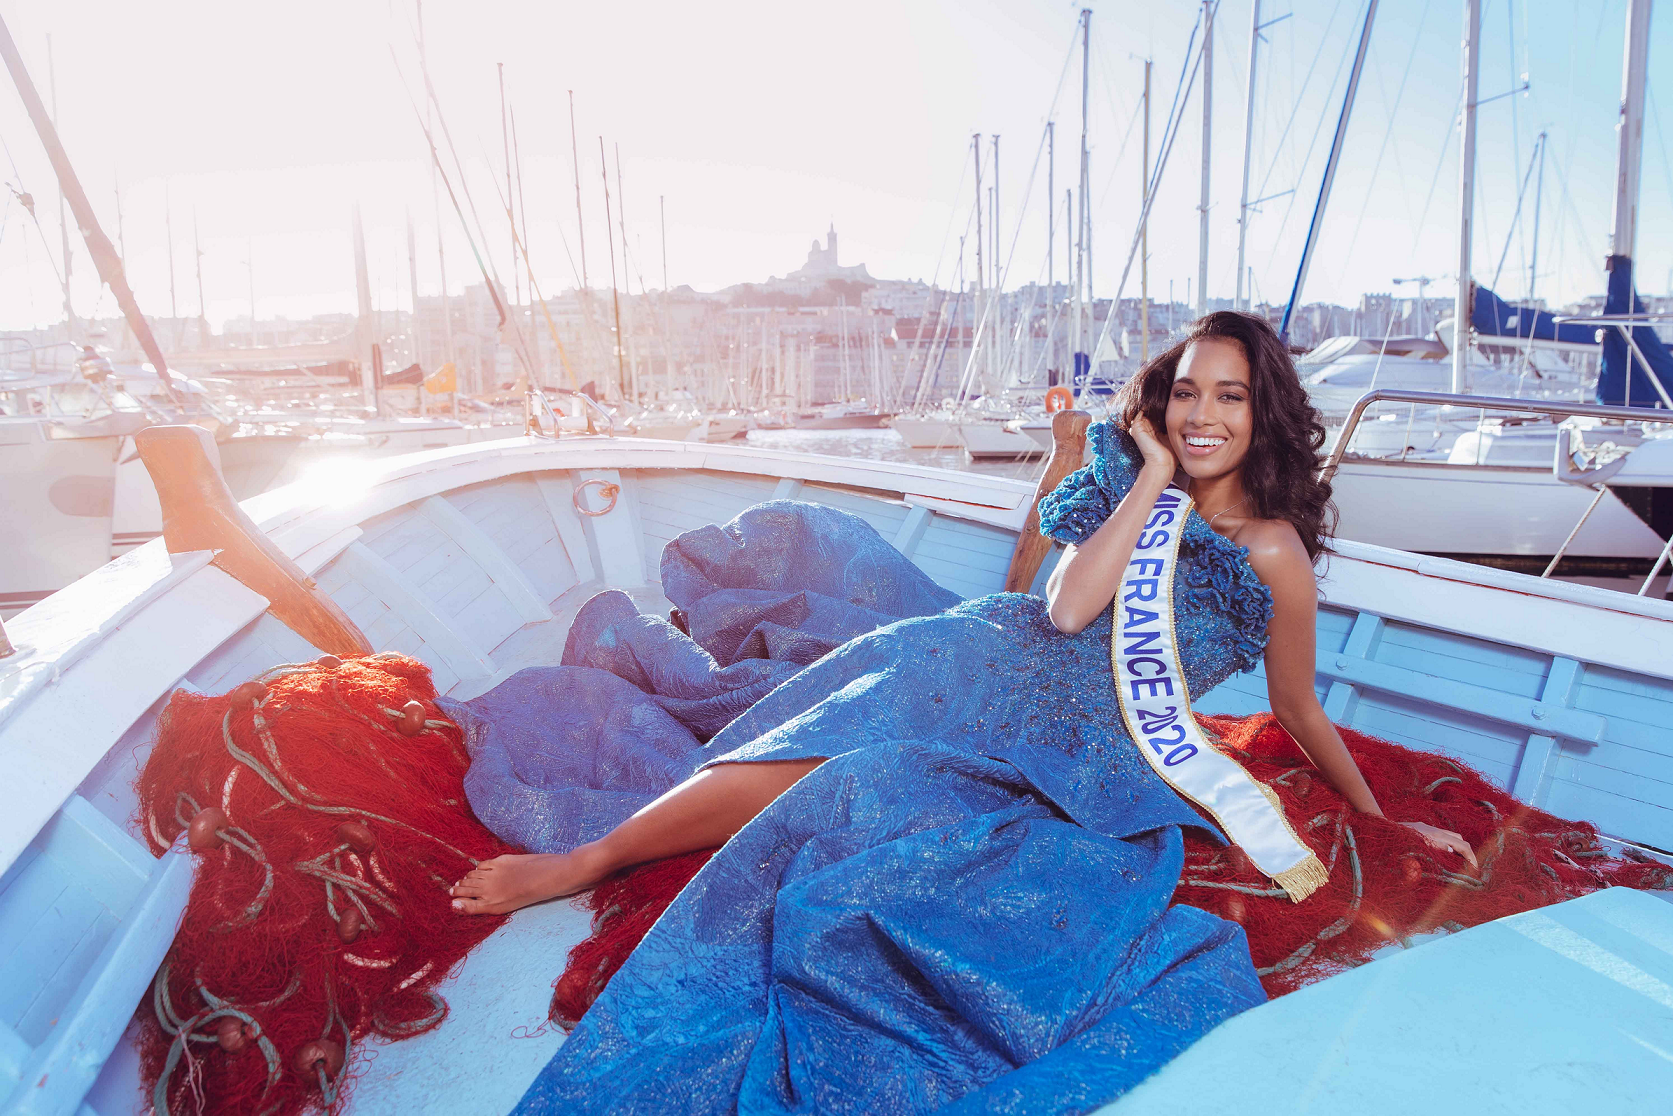 Election Miss France 2021, le 19 décembre en direct sur TF1 et les chaînes ultramarines